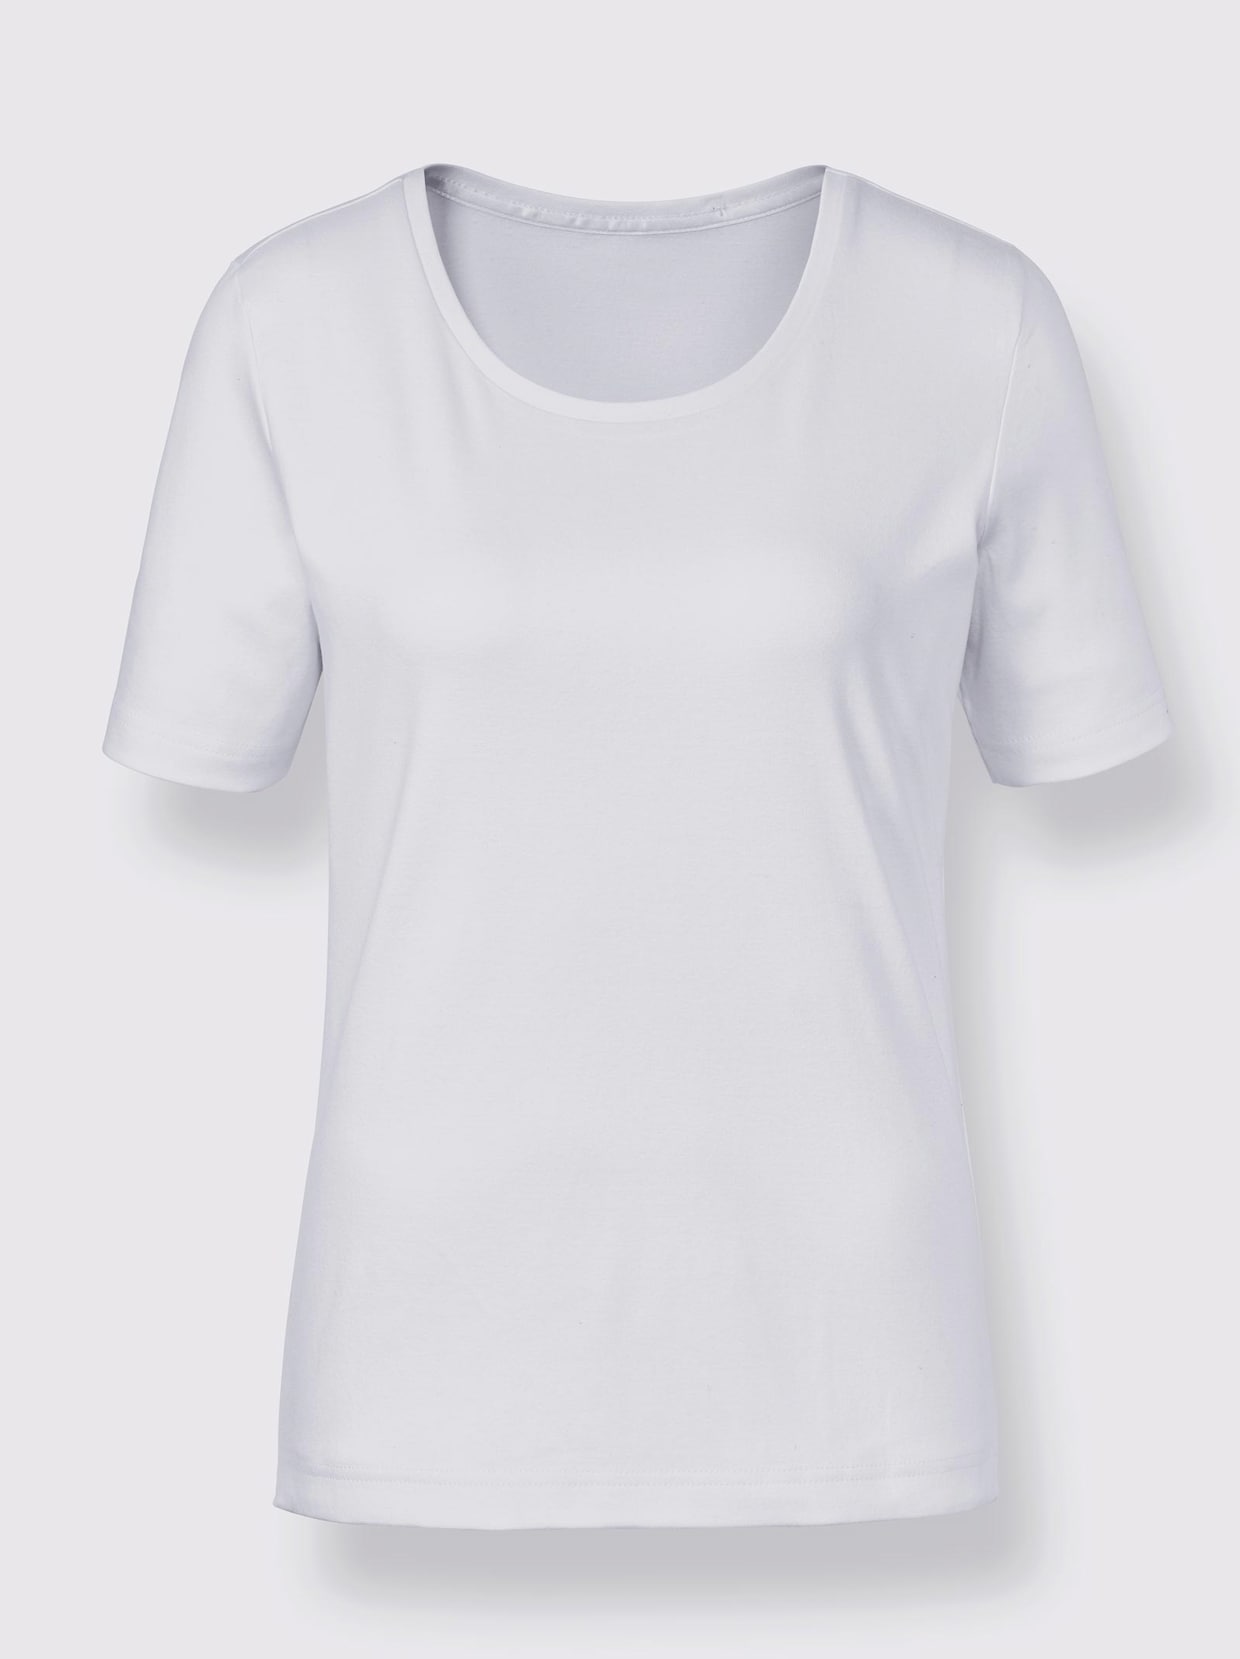 Creation L Premium Baumwoll-Shirt - weiß